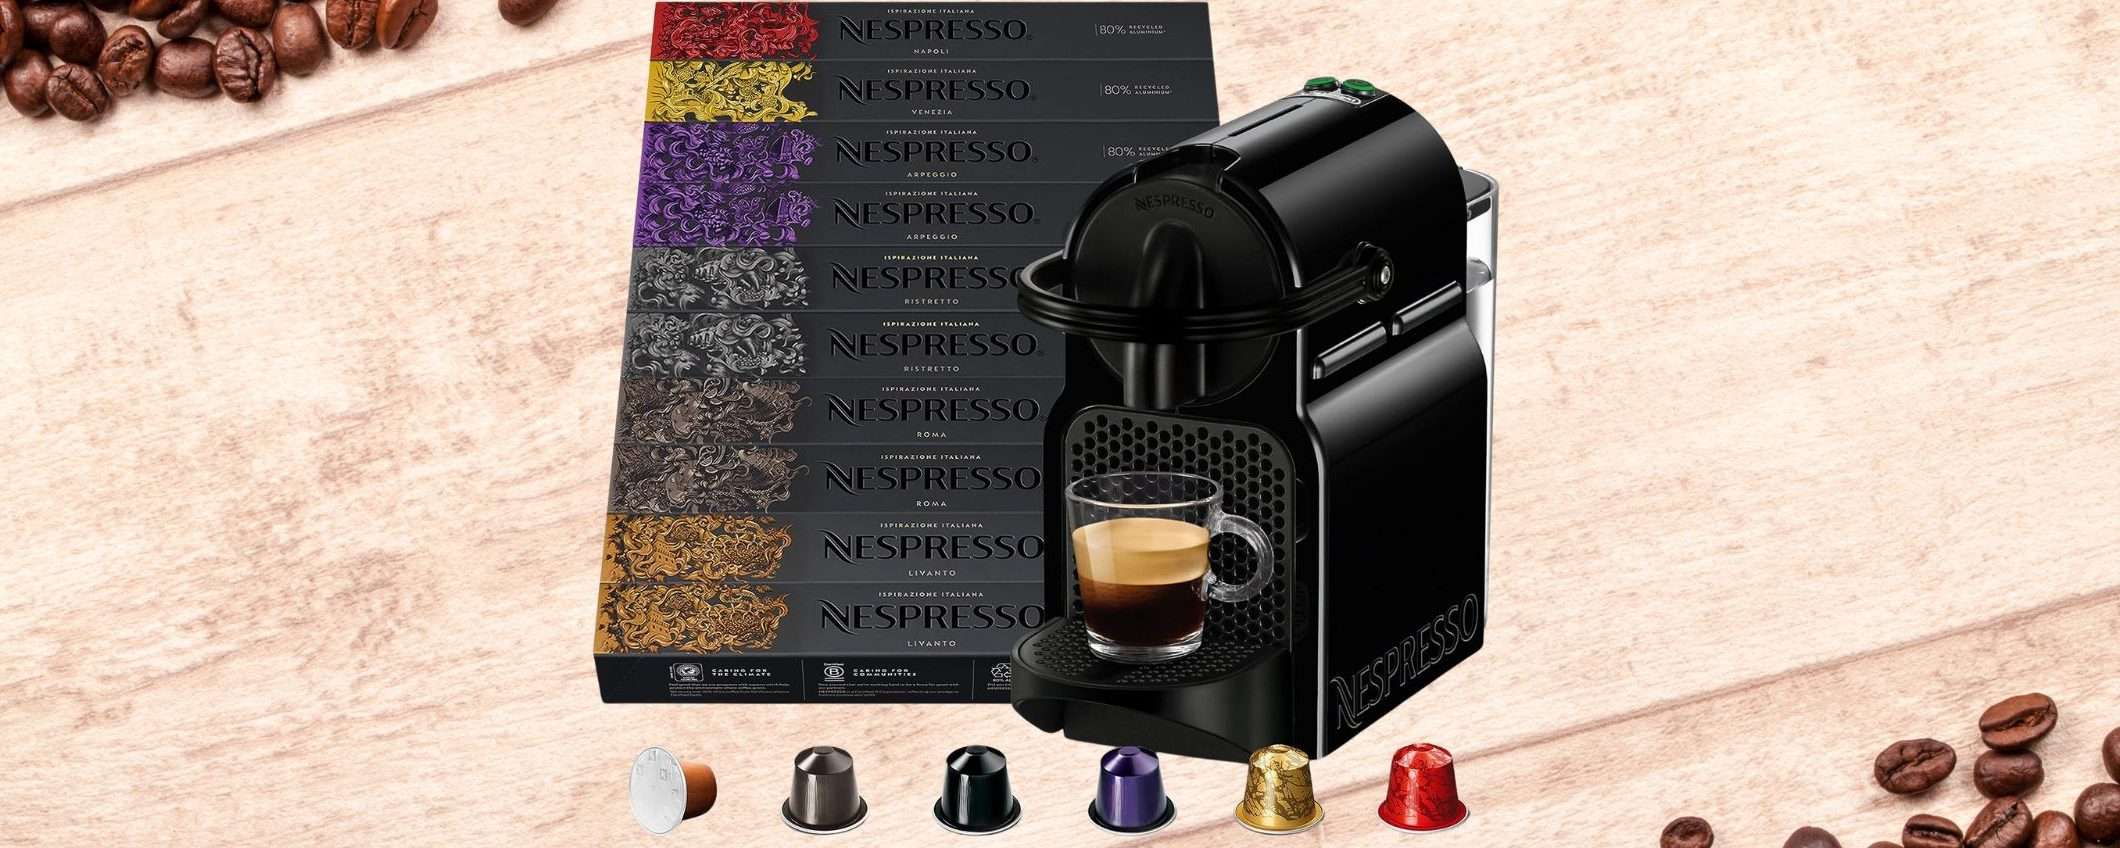 Macchina da caffè Nespresso Inissia a 99€: prezzo WOW, 100 capsule GRATIS